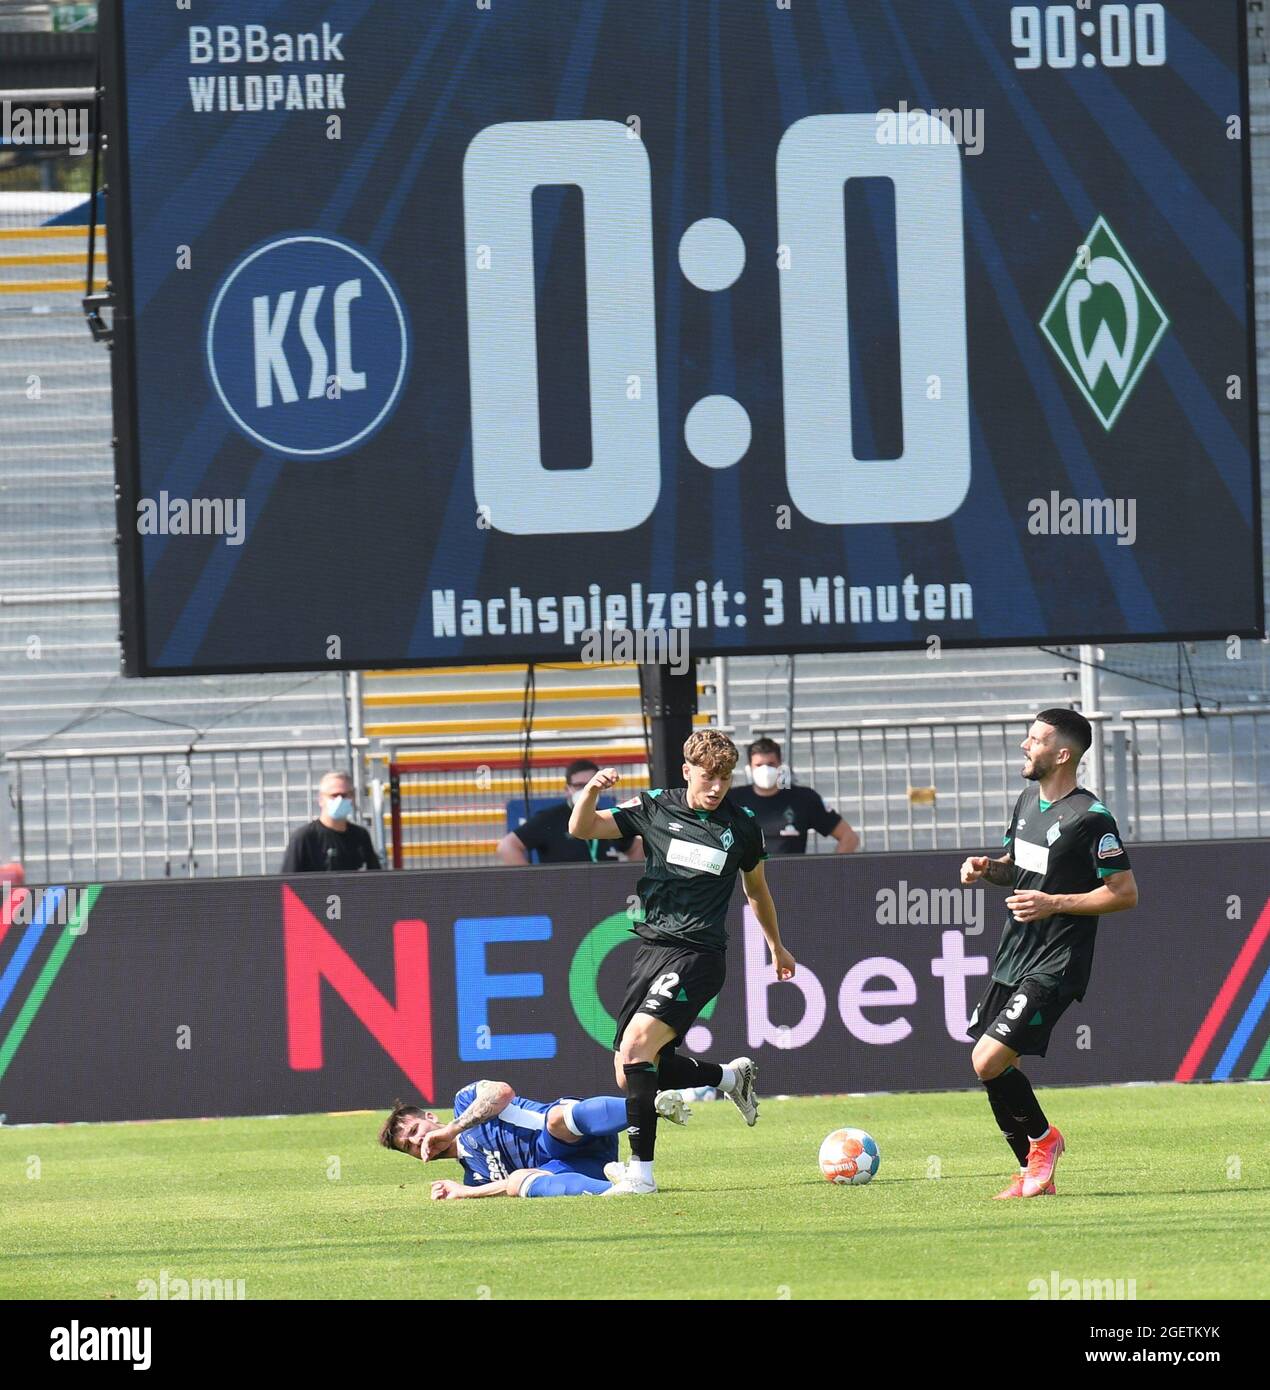 KSC 2. Liga gegen Werder Bremen zweite Liga, Wildparkstadion Karlsruher SC 21. August 2021 Stockfoto